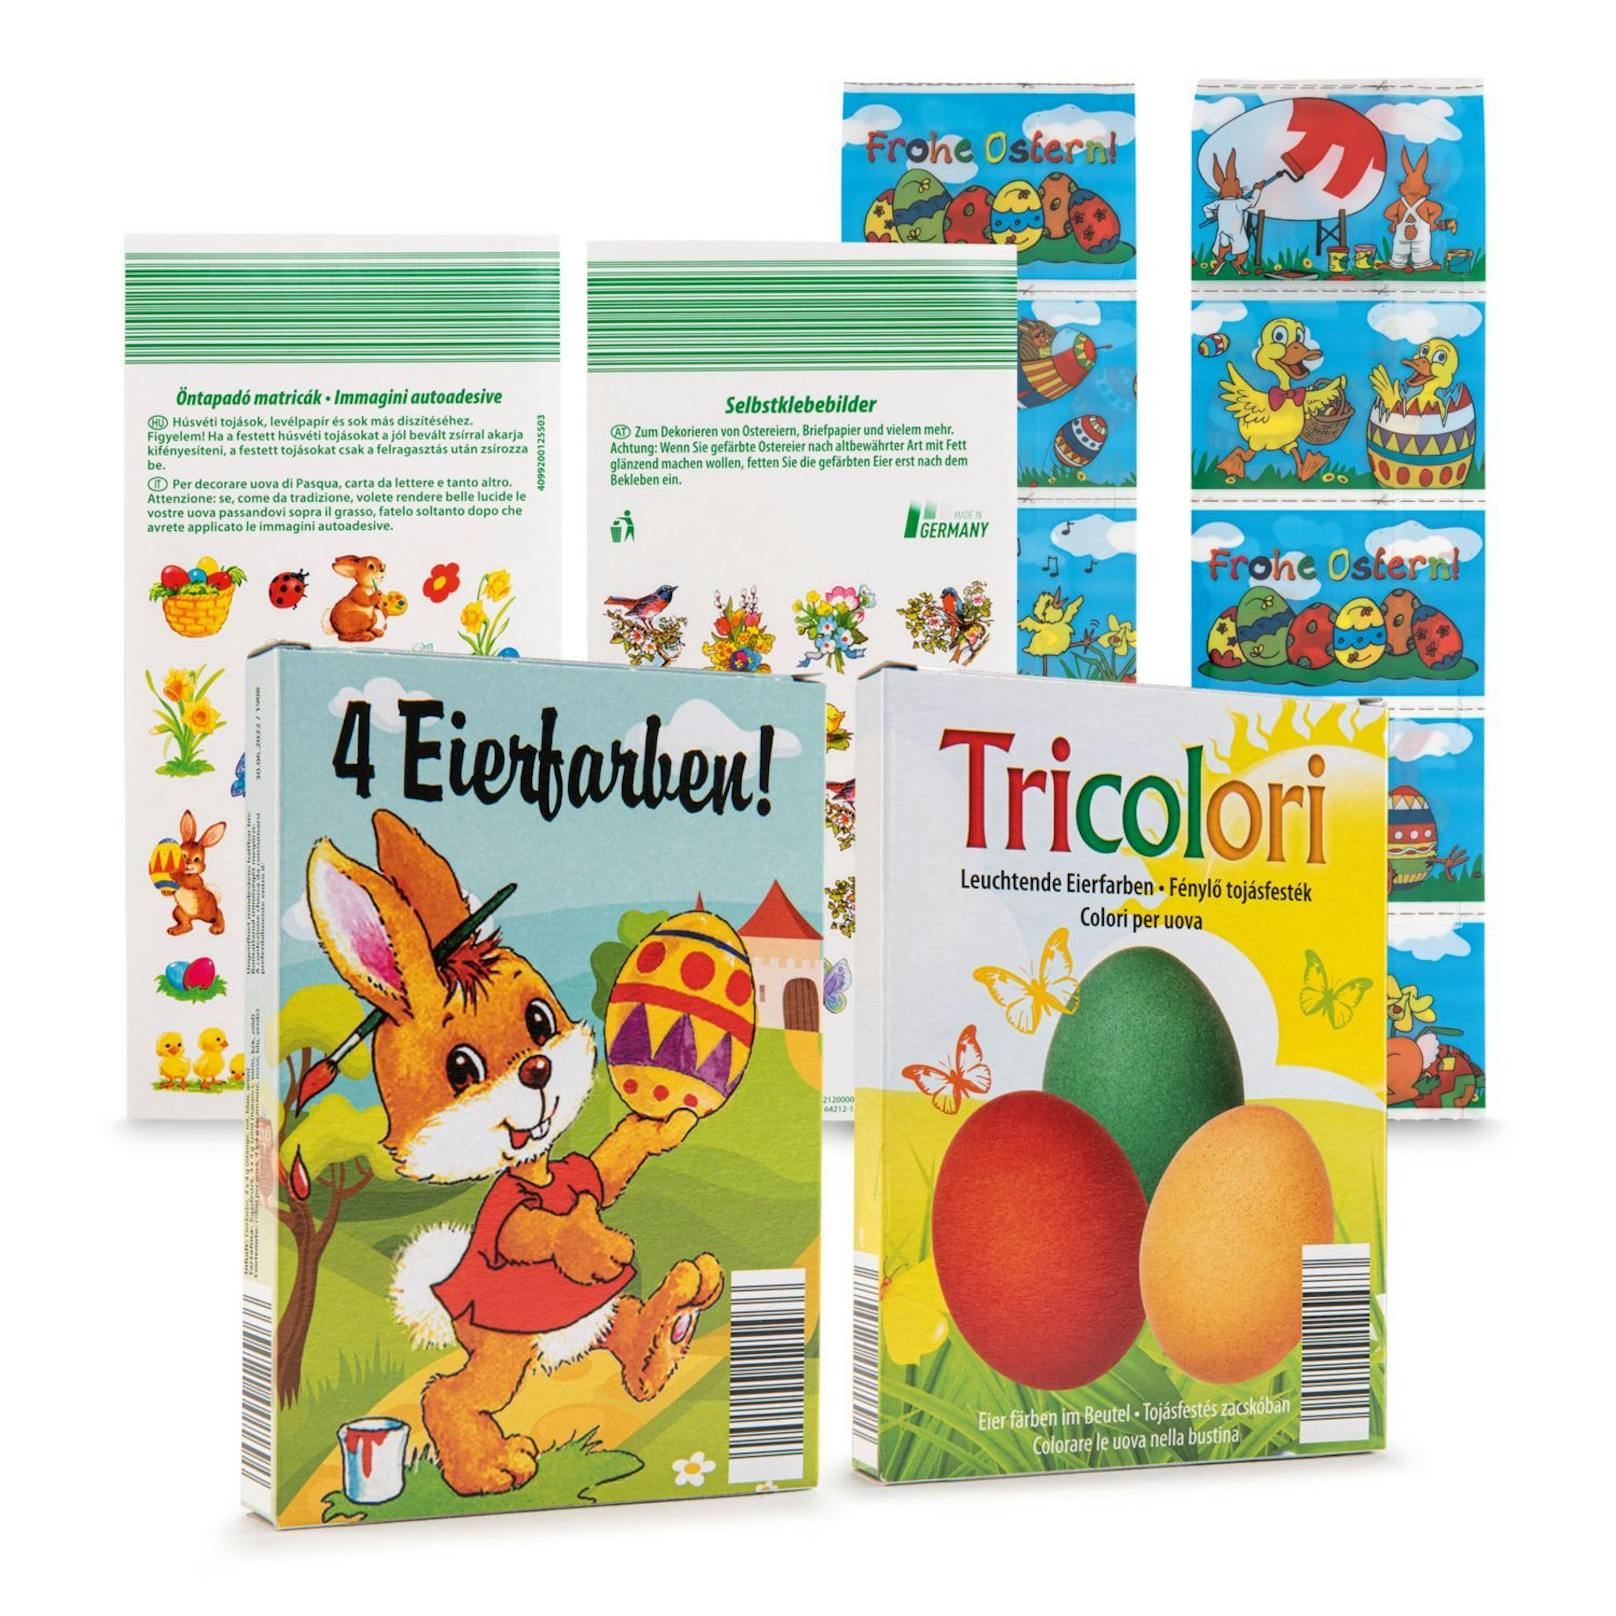 "Tricolori" und "4 Eierfarben" von HOFER.